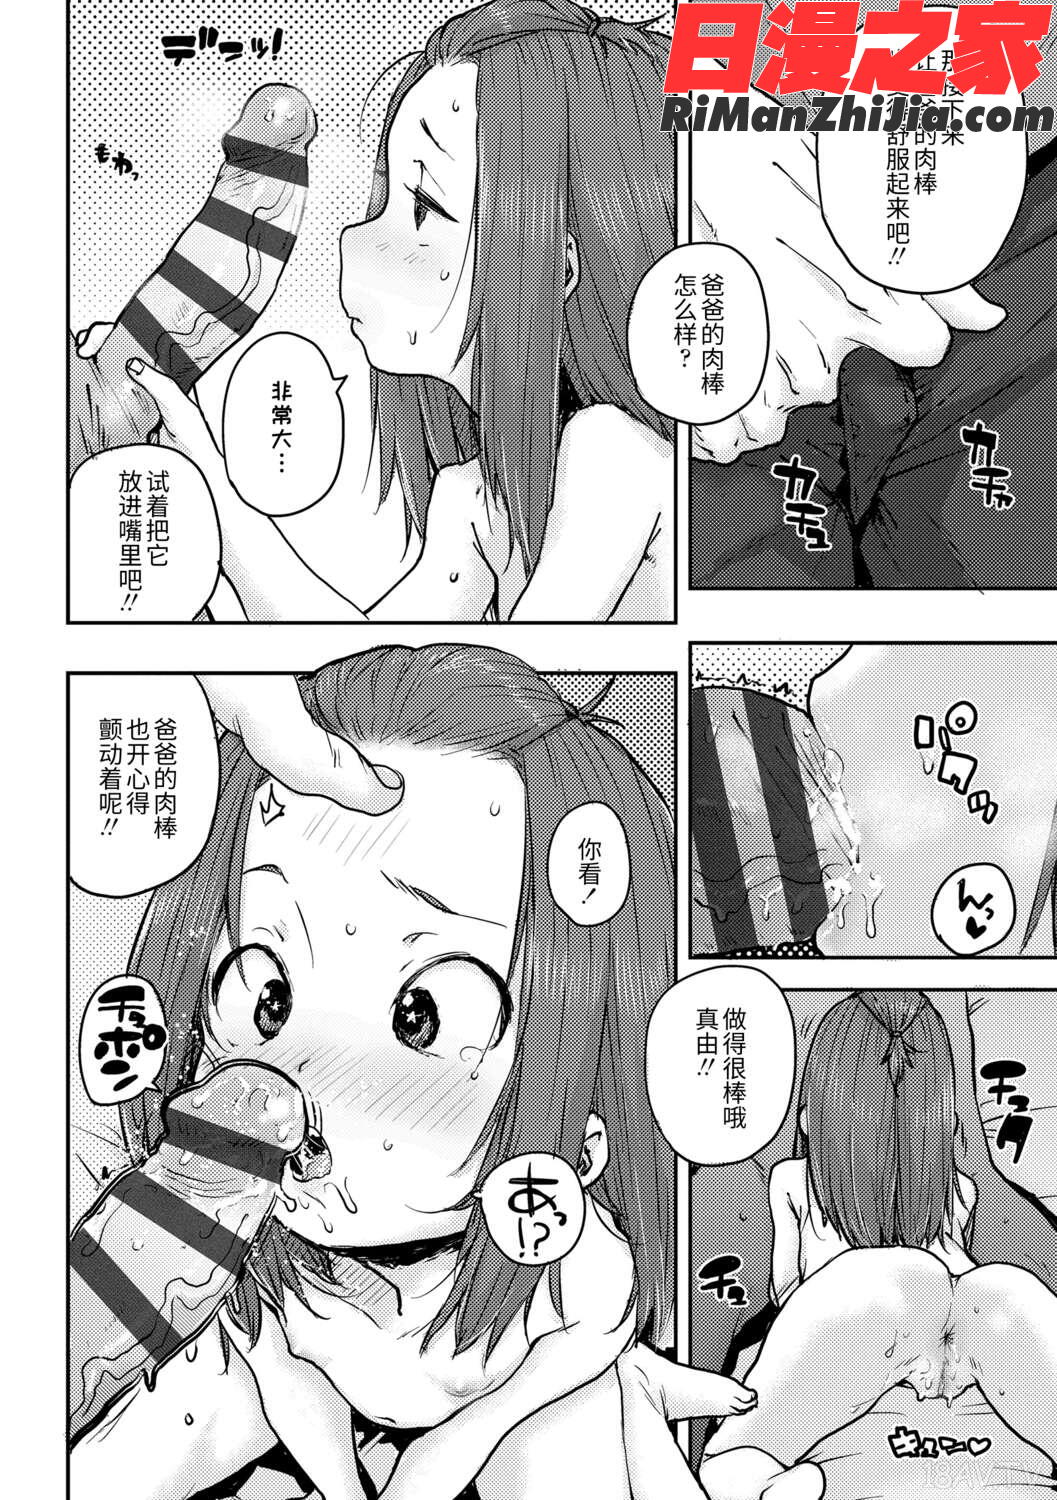 ちびっこエッチ(幼女性事)漫画 免费阅读 整部漫画 104.jpg